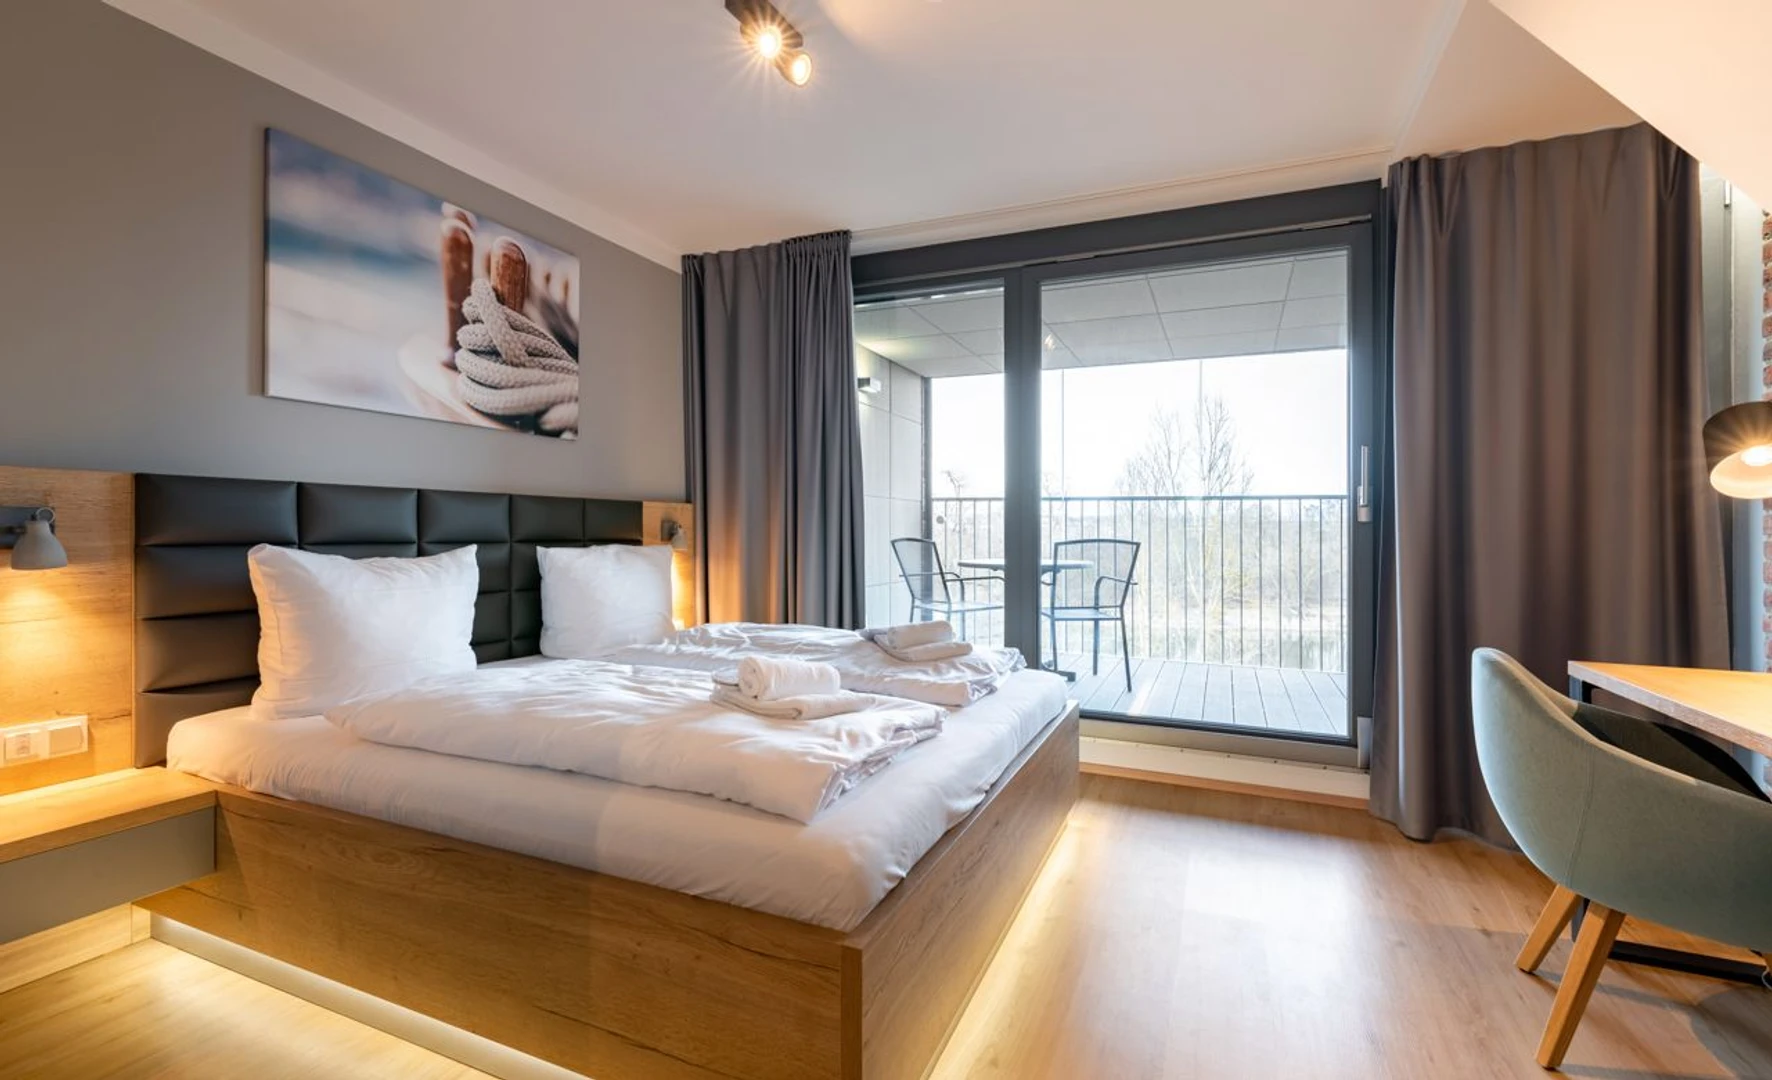 Zimmer mit Doppelbett zu vermieten Regensburg